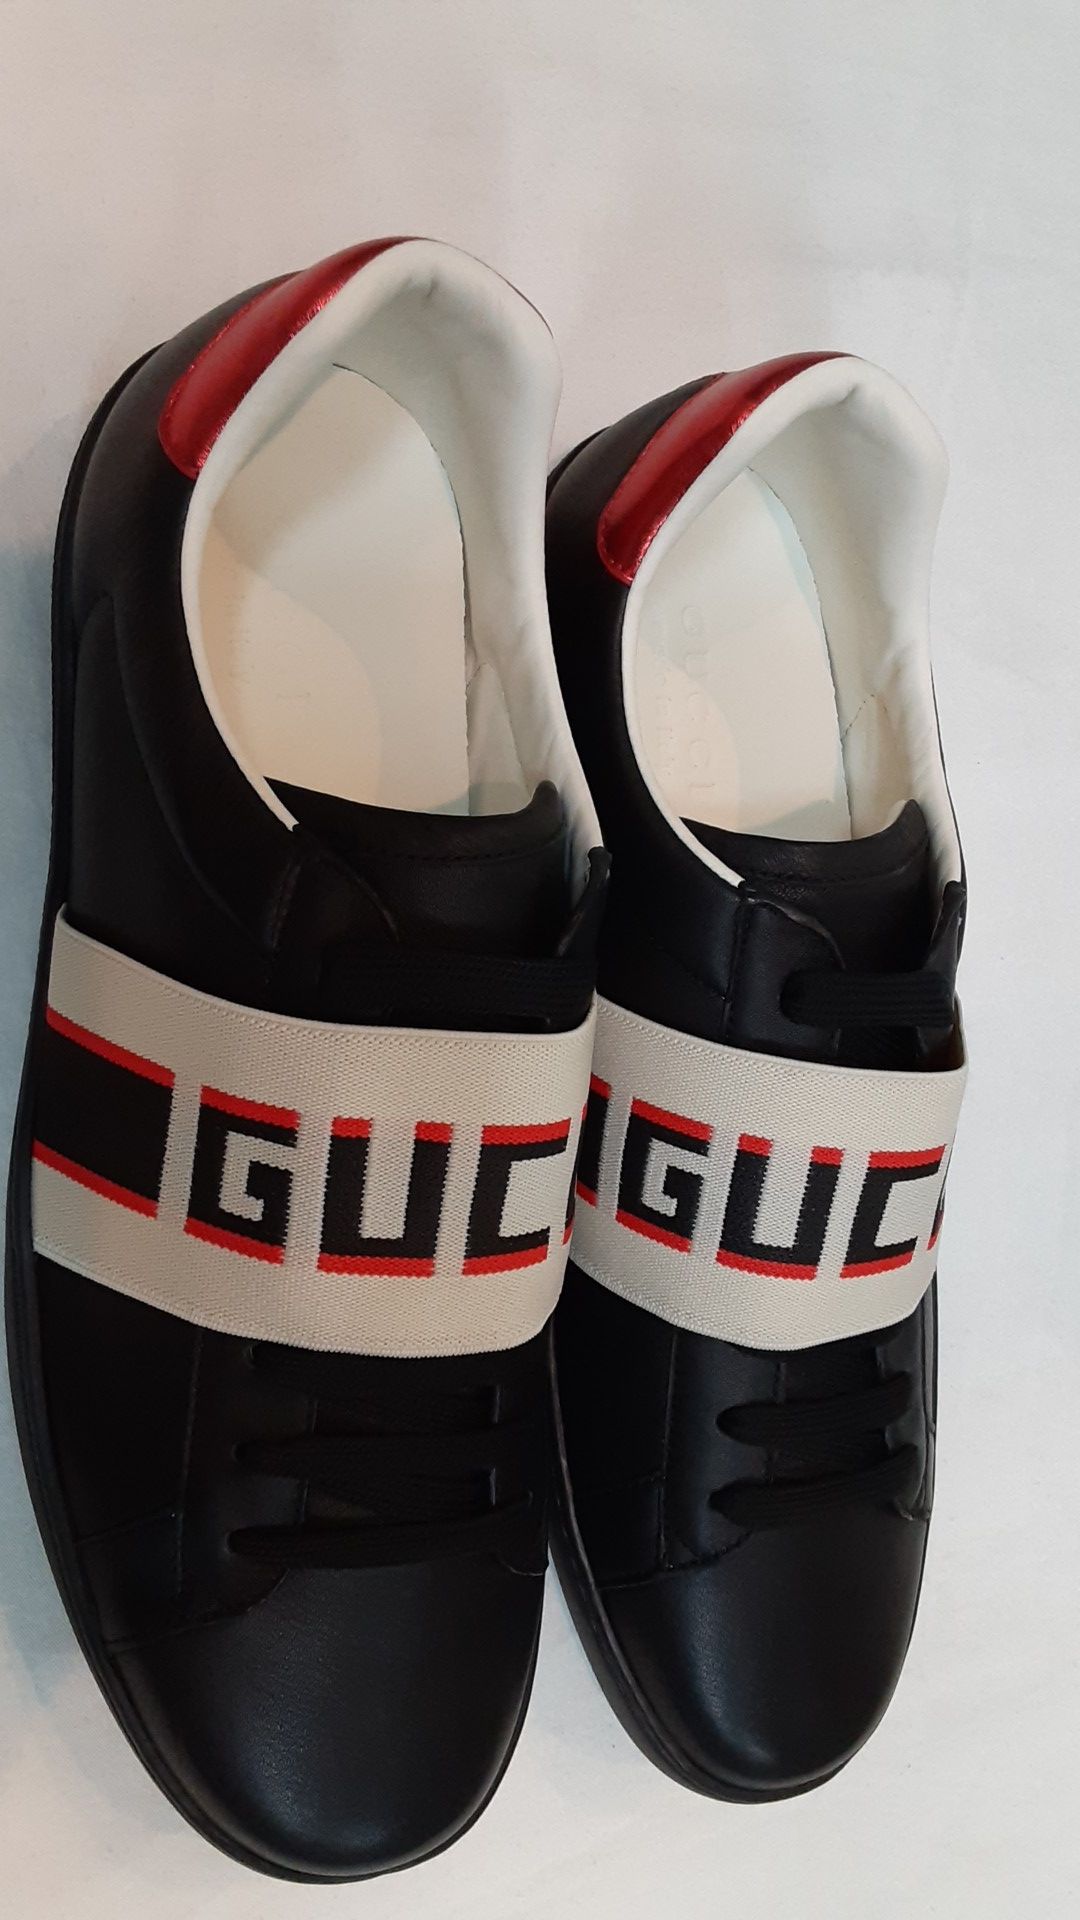 Authentic black Gucci shoes